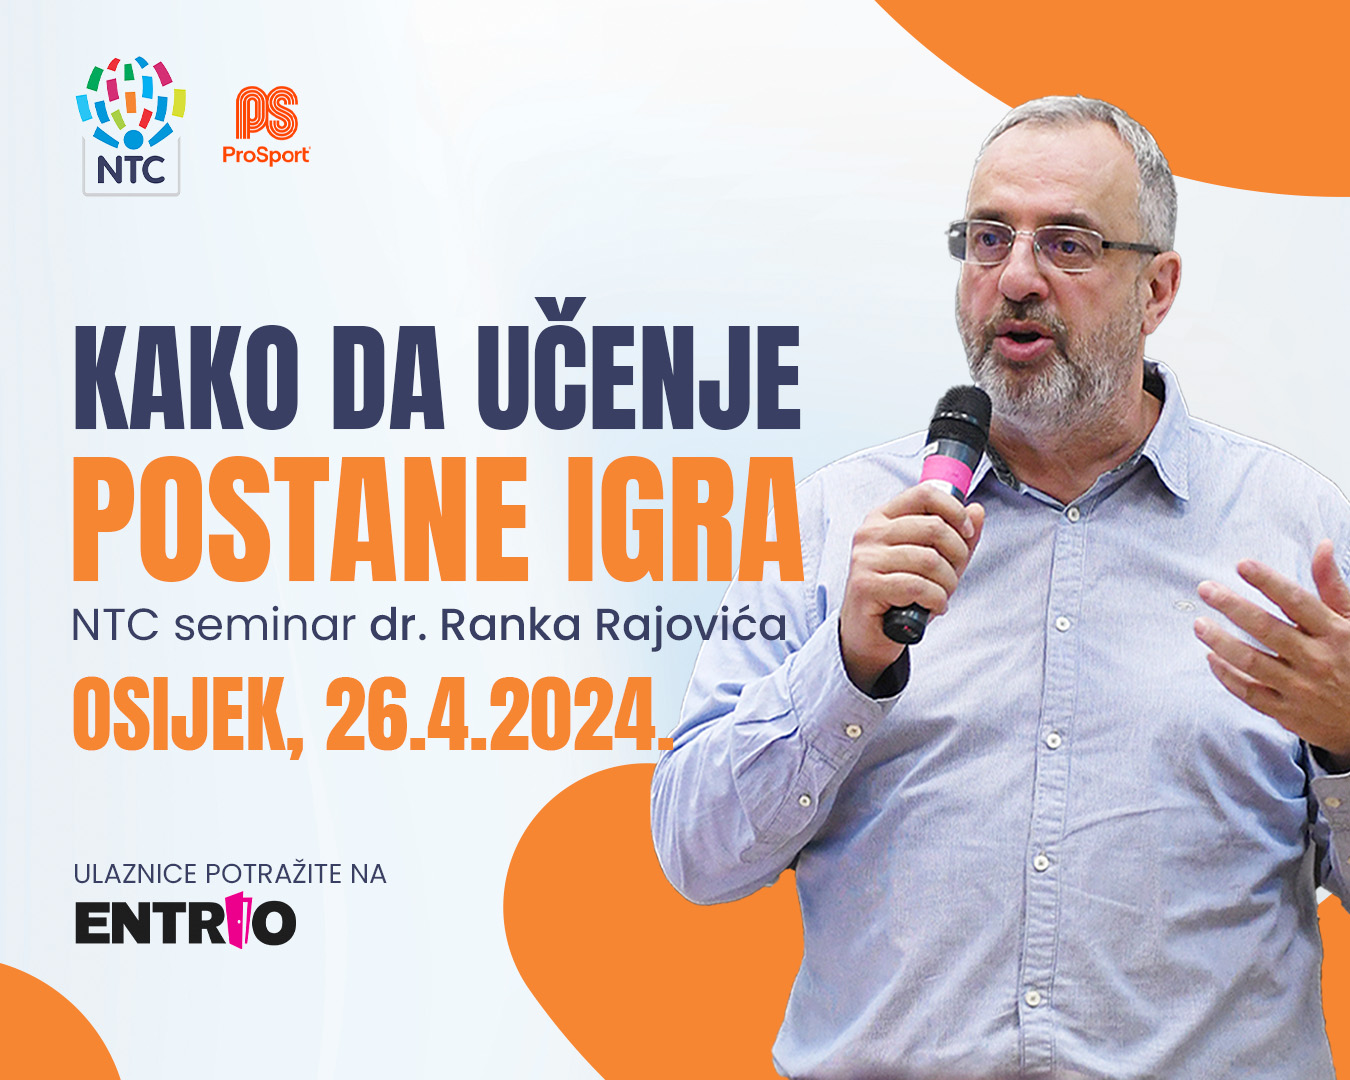 Svjetski priznati stručnjak dr. Ranko Rajović ponovno u Osijeku “Kako da učenje postane igra”